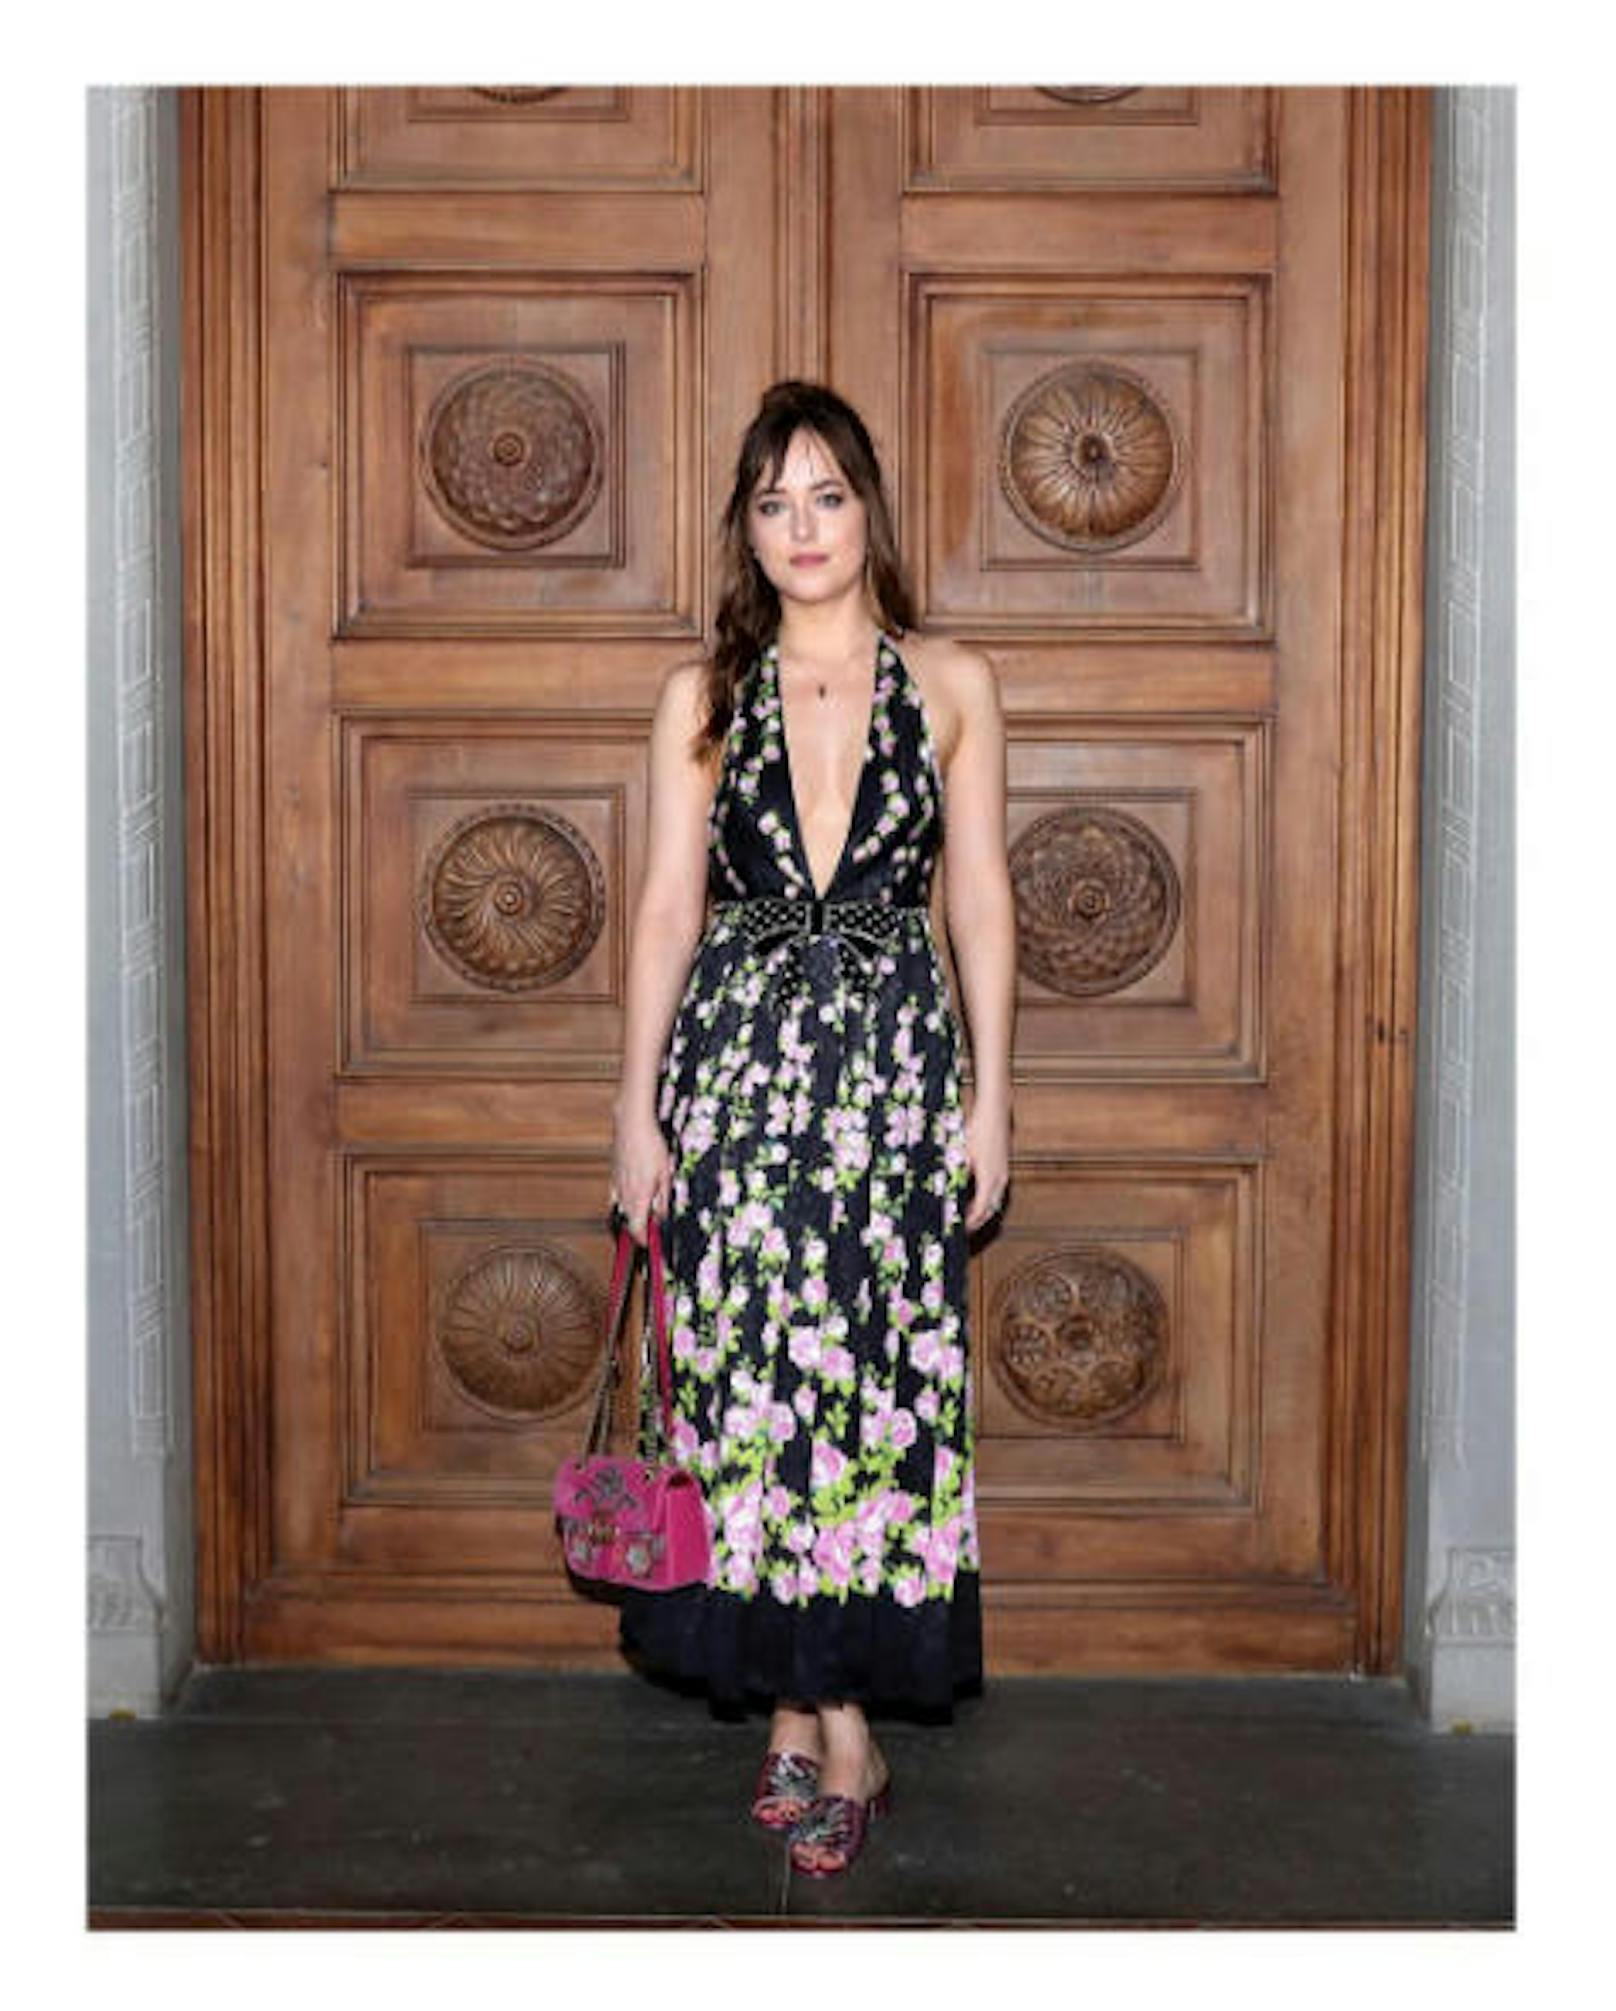 30.05.2017: Die neue Gucci Cruise Kollektion 2018 wurde Montagabend in Florenz vorgestellt. Unter den prominenten Gästen fand sich auch "Fifty Shades"-Star Dakota Johnson.